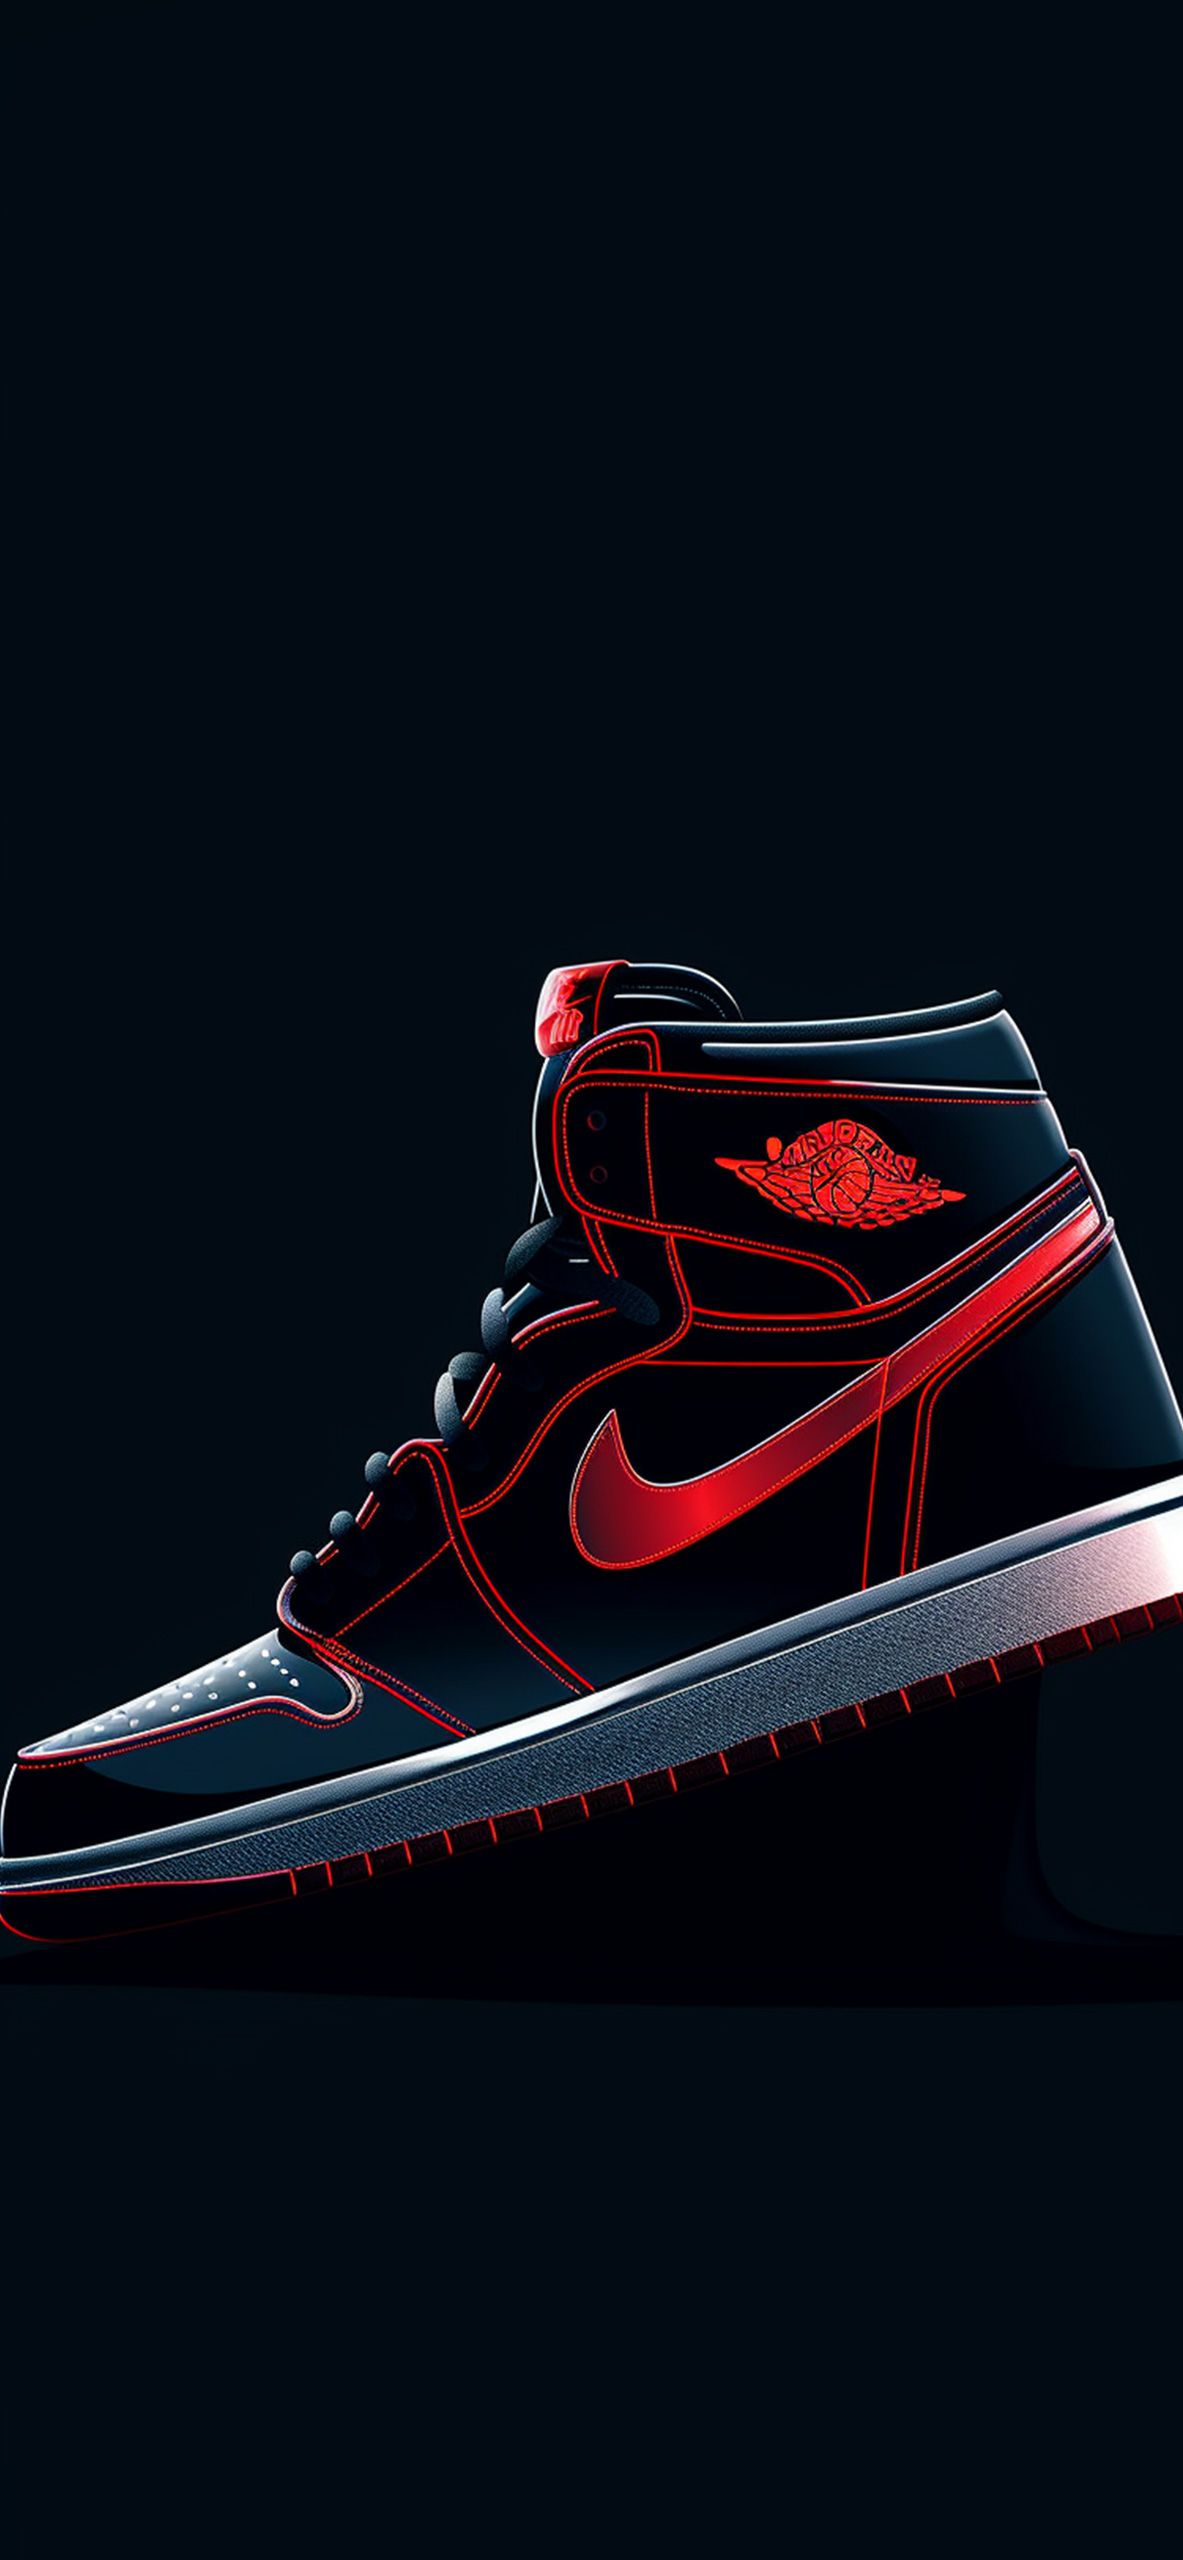  Jordan Hintergrundbild 1183x2560. Nike Air Jordan I Dark Wallpaper Air Jordan Wallpaper 4k